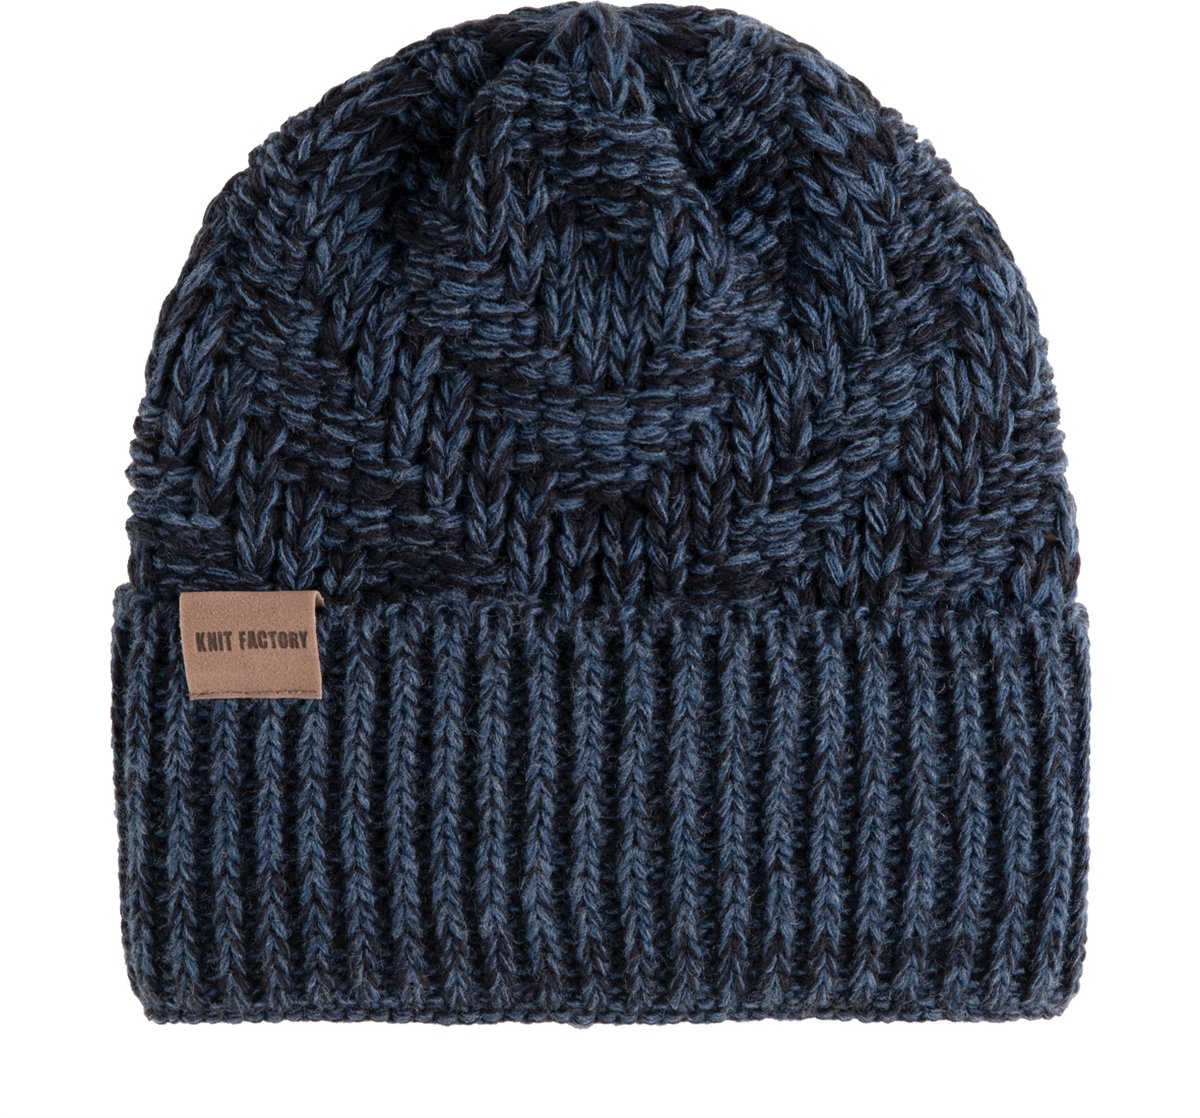 Knit Factory Sally Gebreide Muts Heren & Dames - Beanie hat - Jeans/Navy - Grofgebreid - Warme blauw gemeleerde Wintermuts - Unisex - One Size